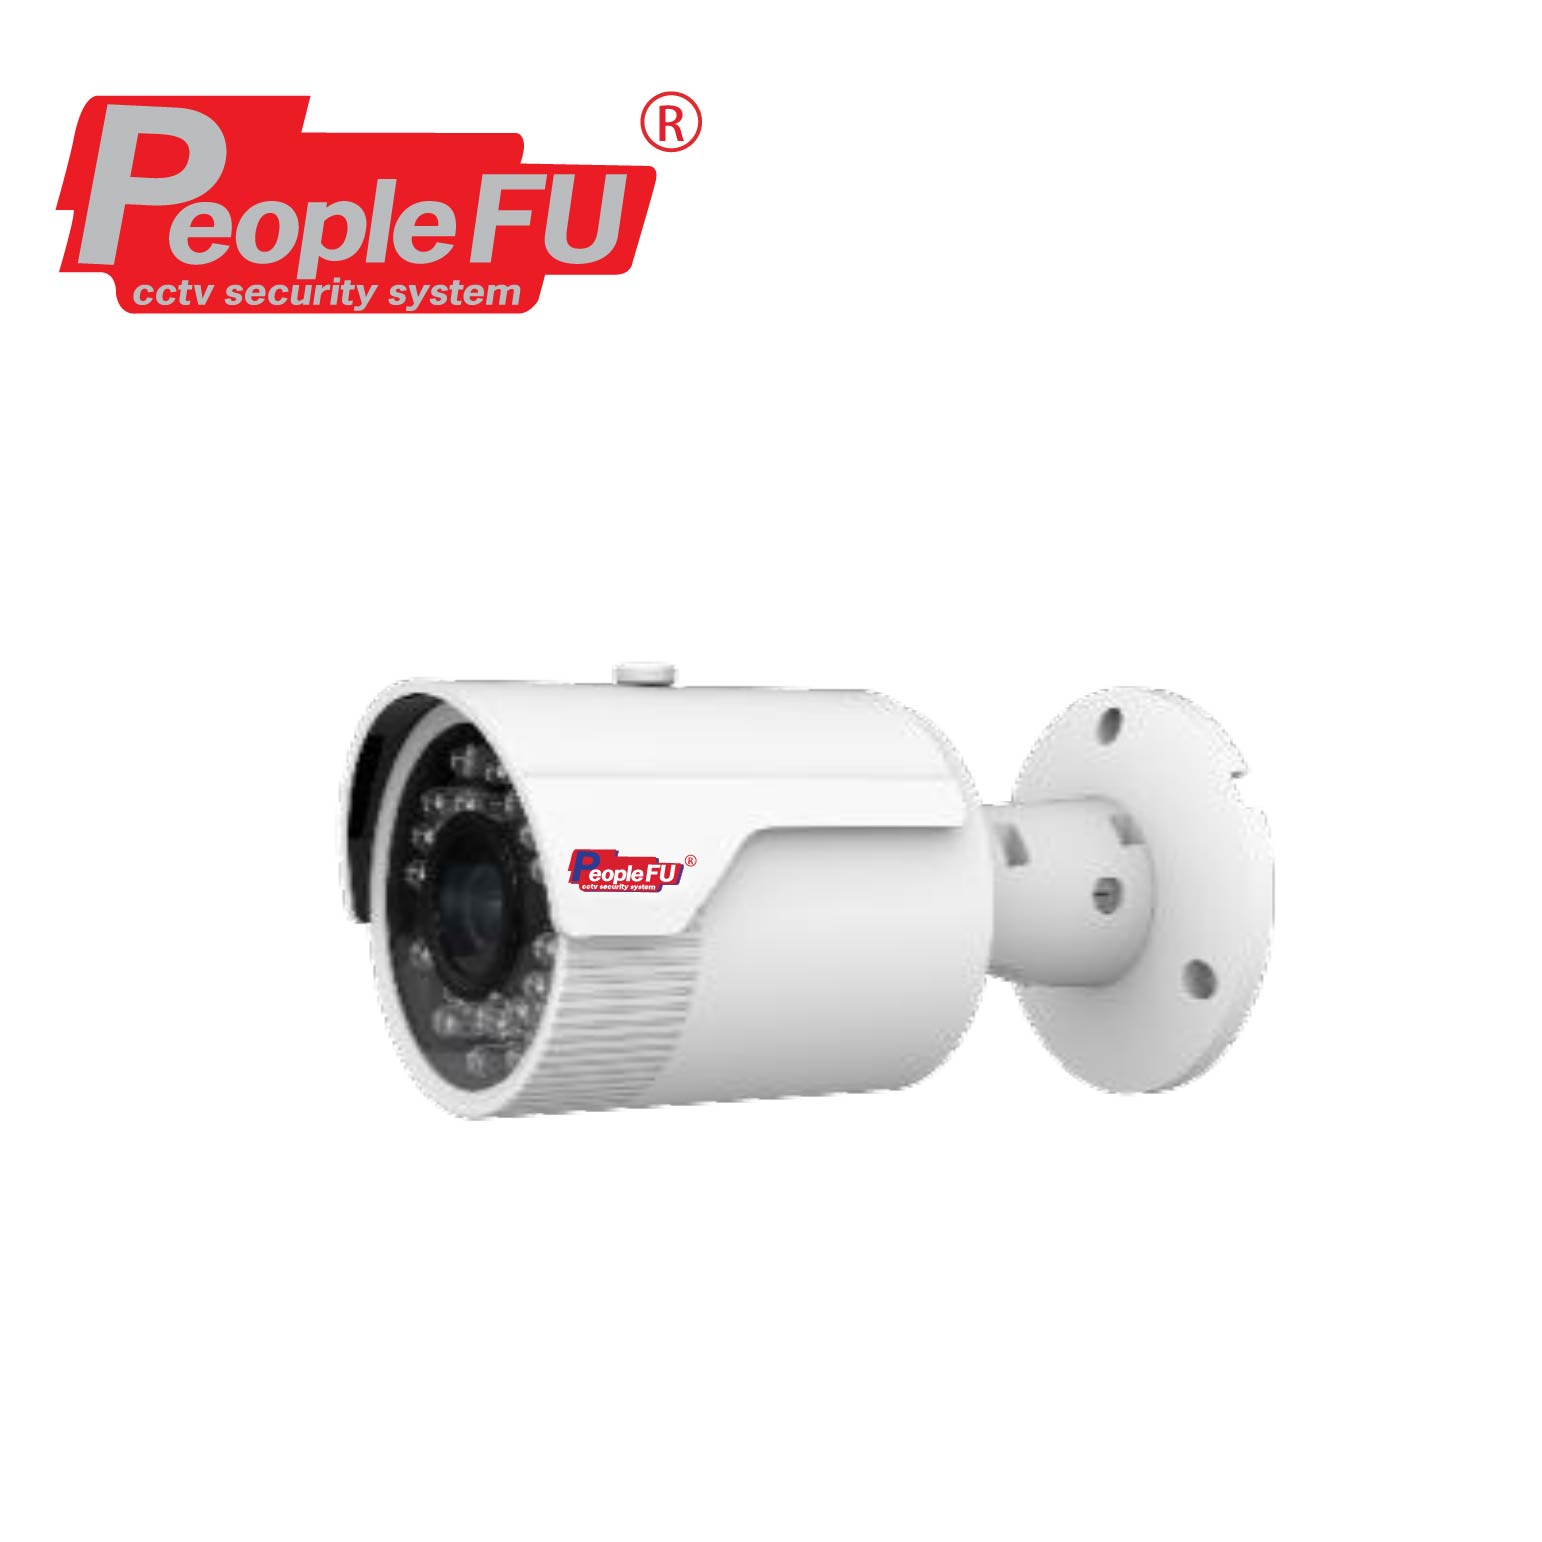 Peoplefu_ͧǧûԴ_Fu IPC BUIR 9907 Lens 3.6 mm